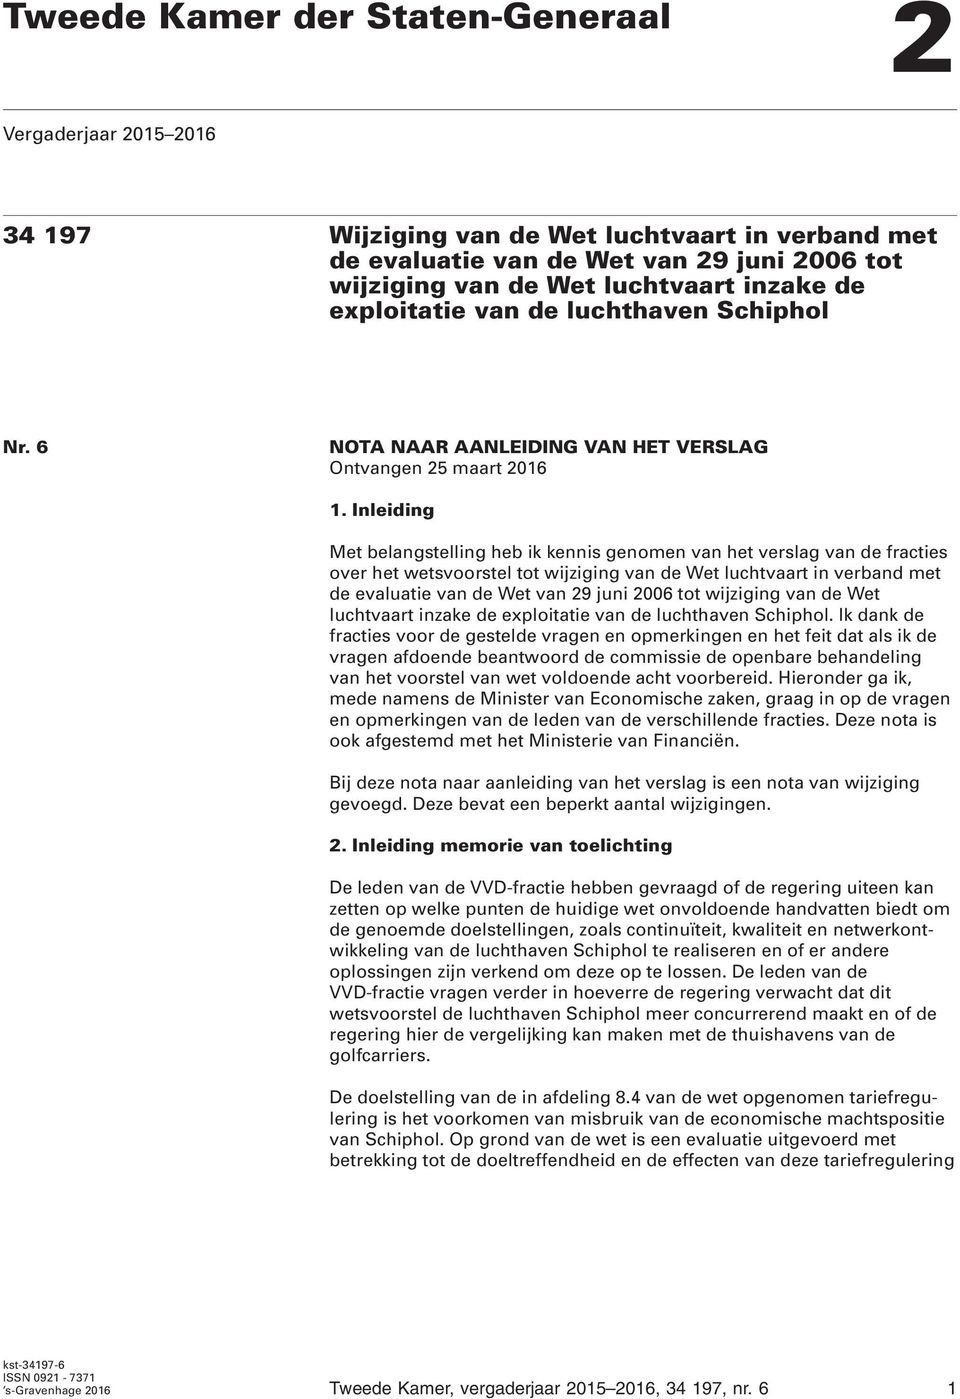 Inleiding Met belangstelling heb ik kennis genomen van het verslag van de fracties over het wetsvoorstel tot wijziging van de Wet luchtvaart in verband met de evaluatie van de Wet van 29 juni 2006